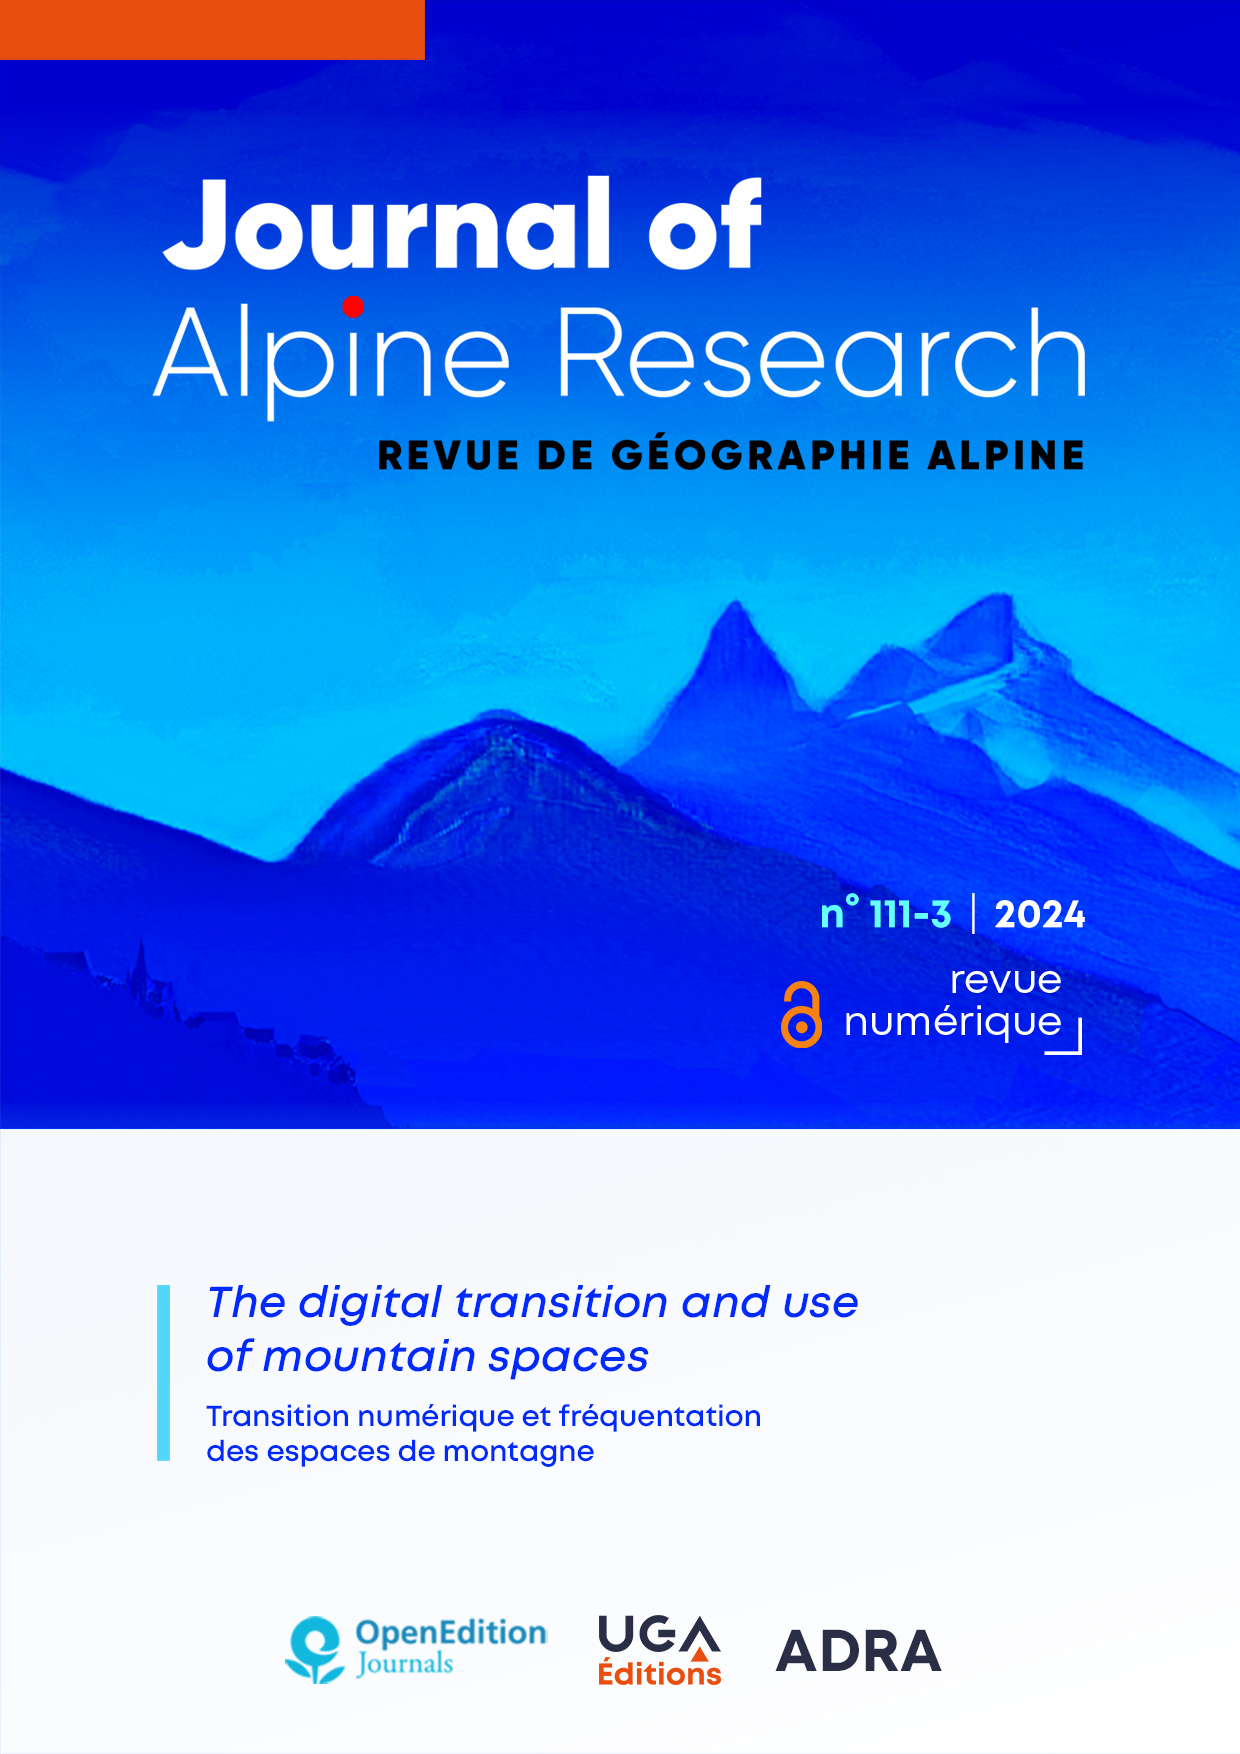 Journal of Alpine Research | Revue de géographie alpine no 111-3 / 2024